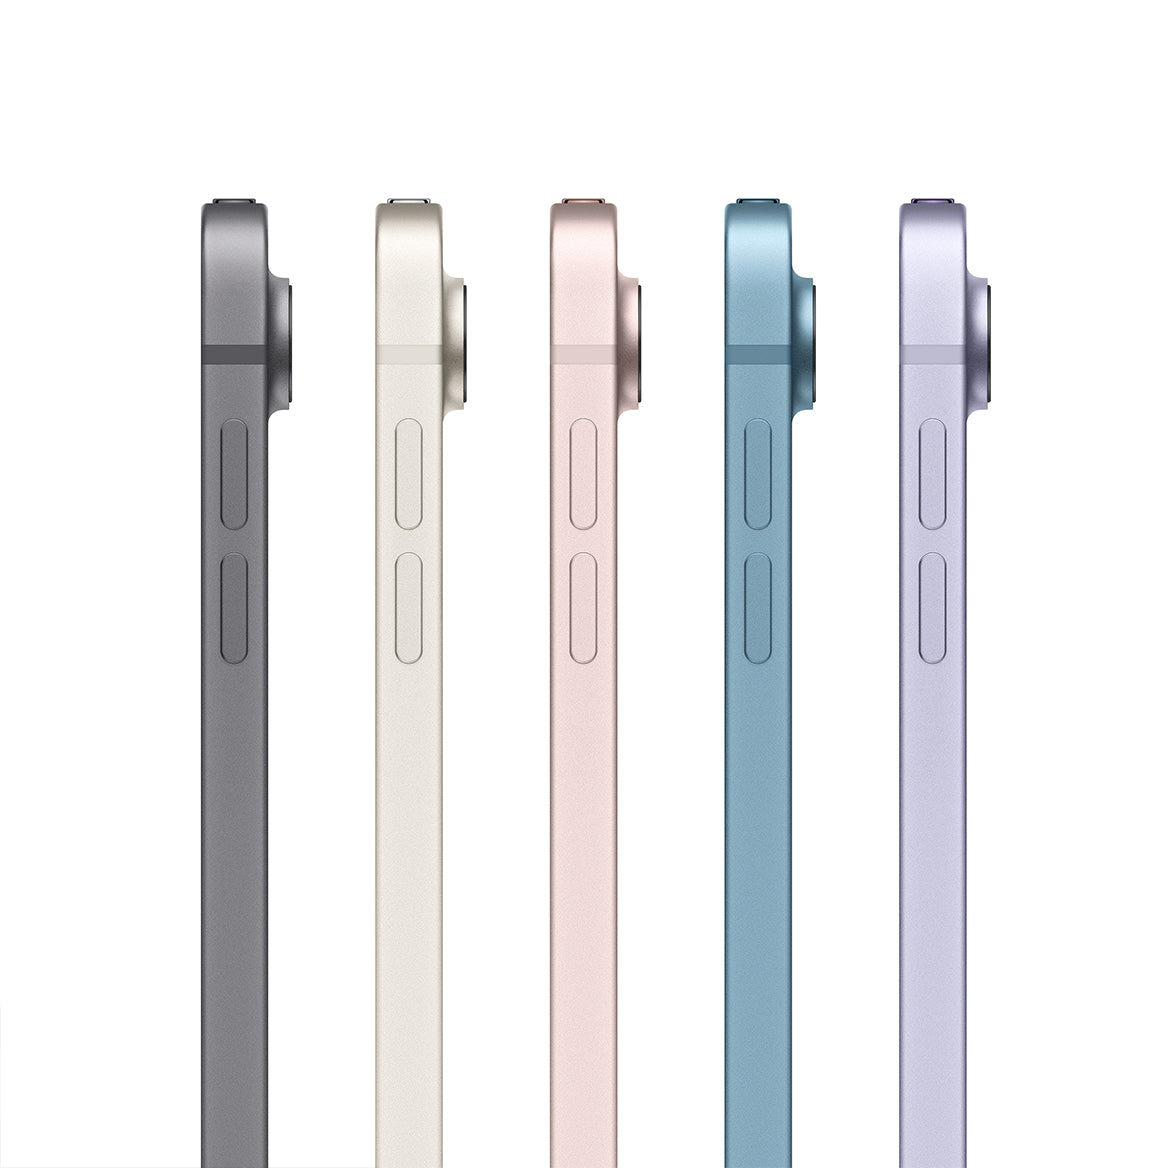 iPad Air 10.9 inci Gen 5 all colors 2